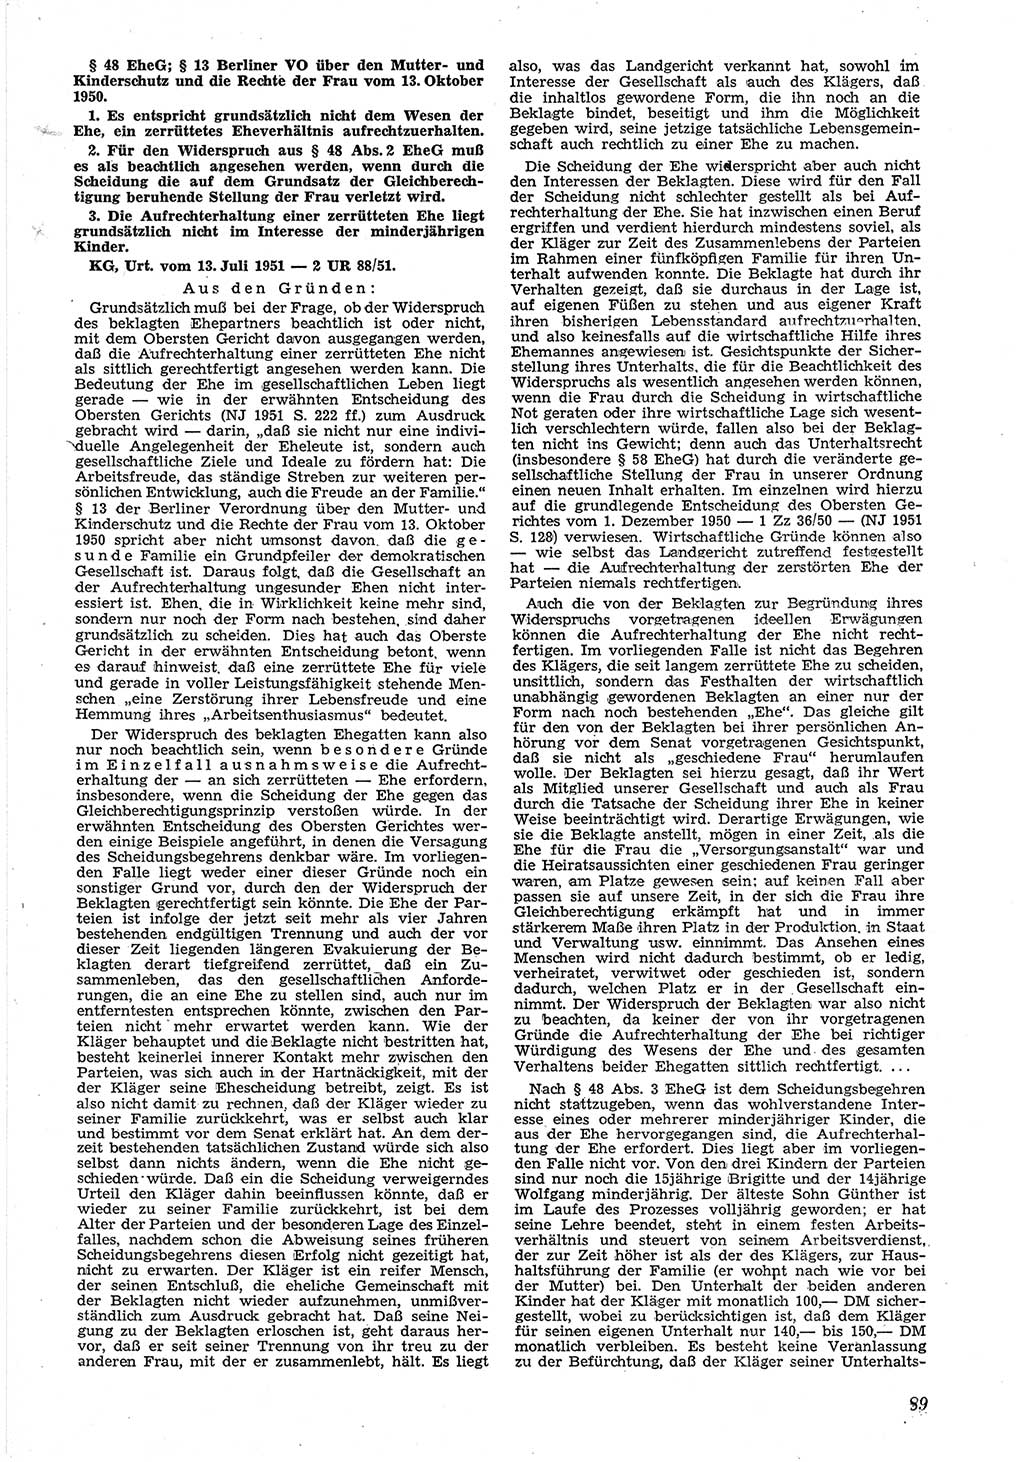 Neue Justiz (NJ), Zeitschrift für Recht und Rechtswissenschaft [Deutsche Demokratische Republik (DDR)], 6. Jahrgang 1952, Seite 89 (NJ DDR 1952, S. 89)